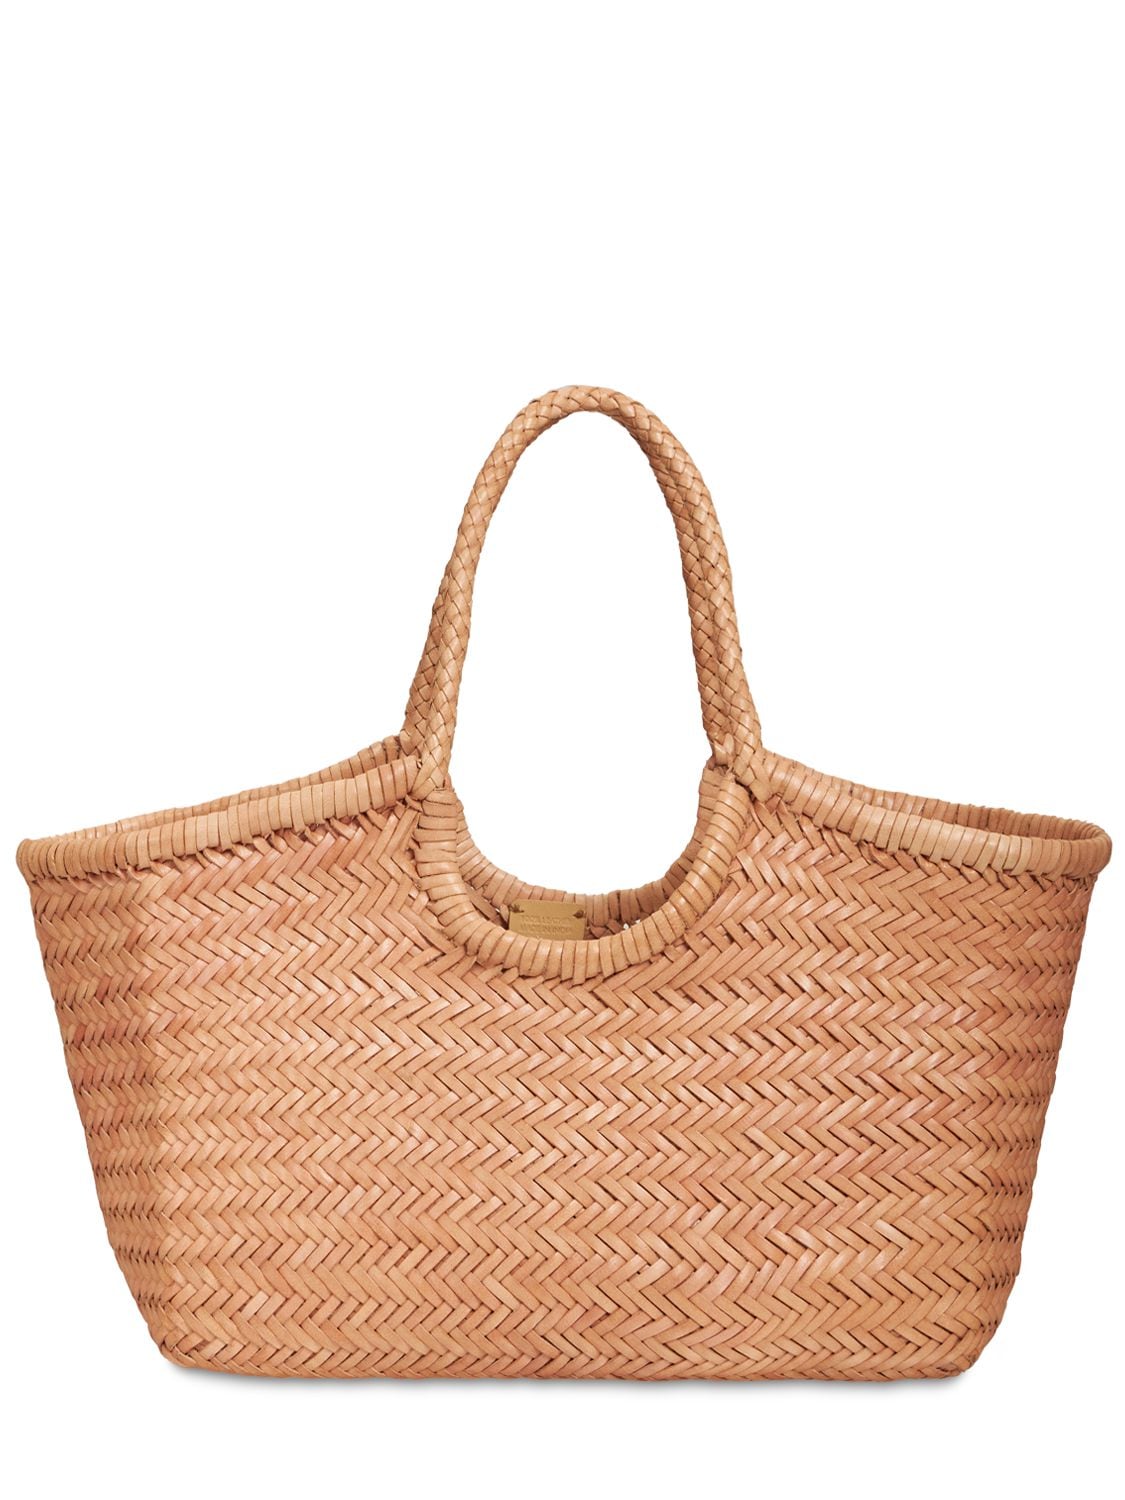 DRAGON DIFFUSION Big Nantucket Woven Leather Basket Bag